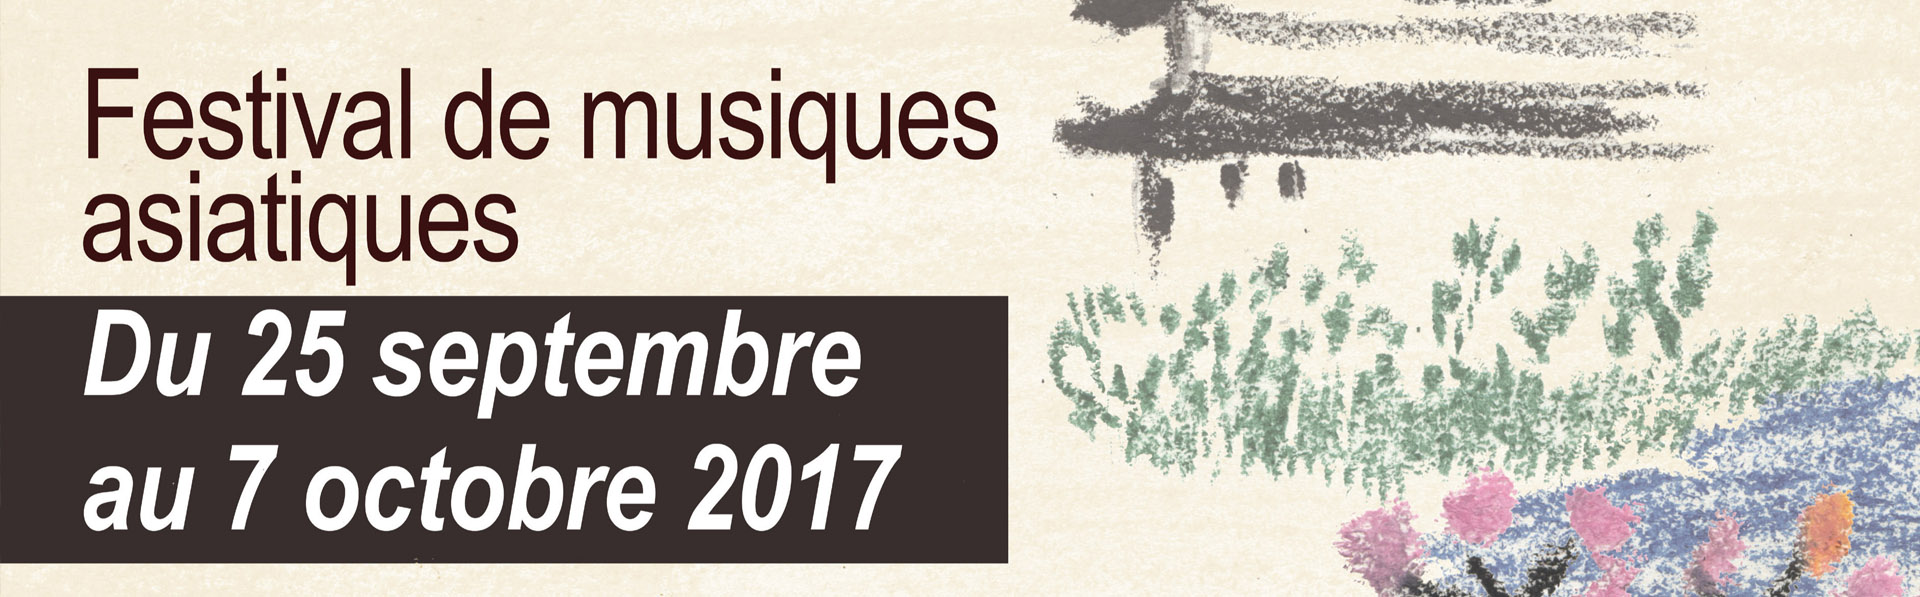 20172009-festival-de-musiques-asiatiques-pour-la-fete-de-la-lune-2017-paris - bannière-Fête-de-la-lunemairie-1-copy.jpg